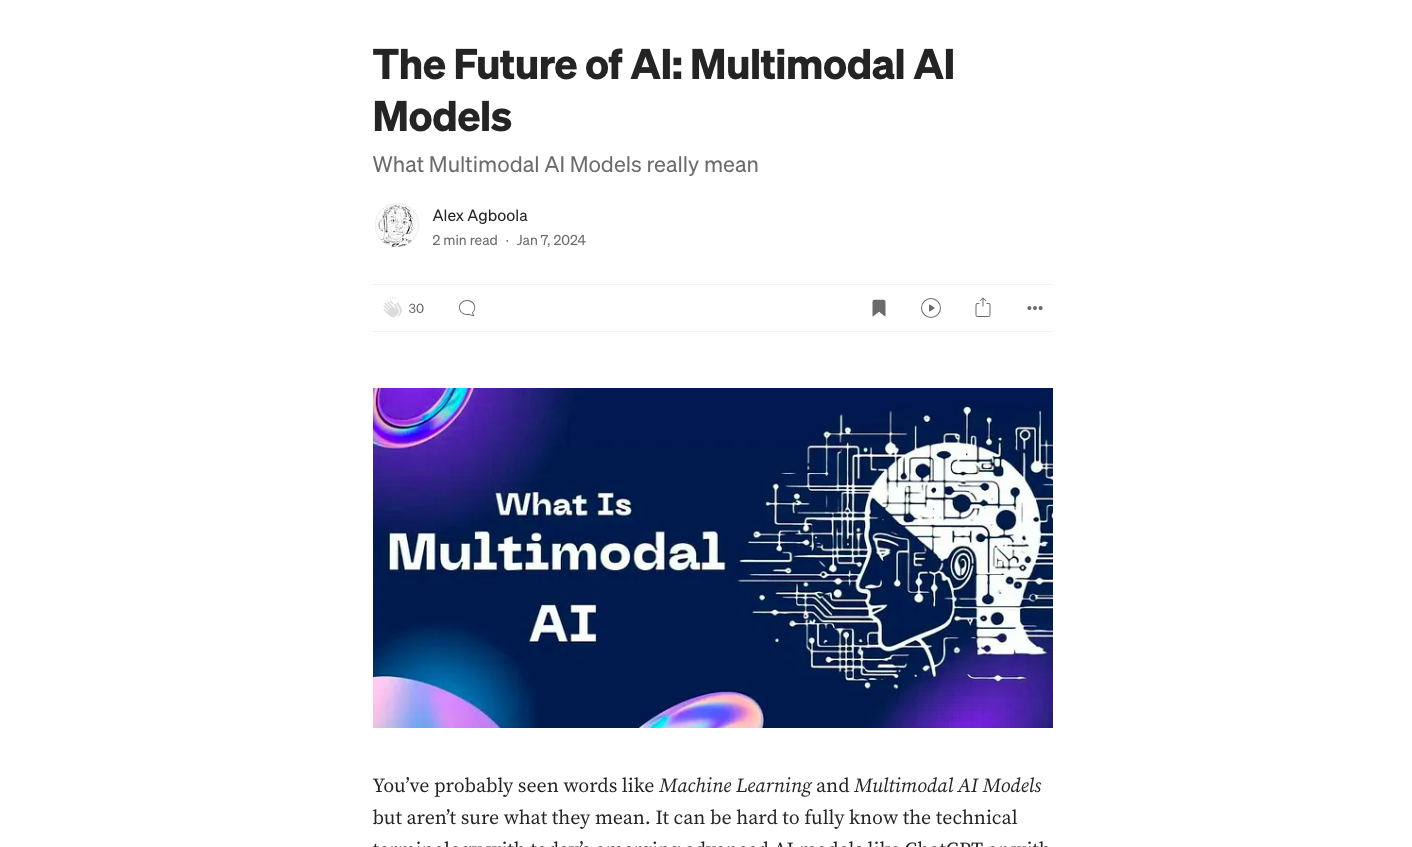 The Future of AI: Multimodal AI Models